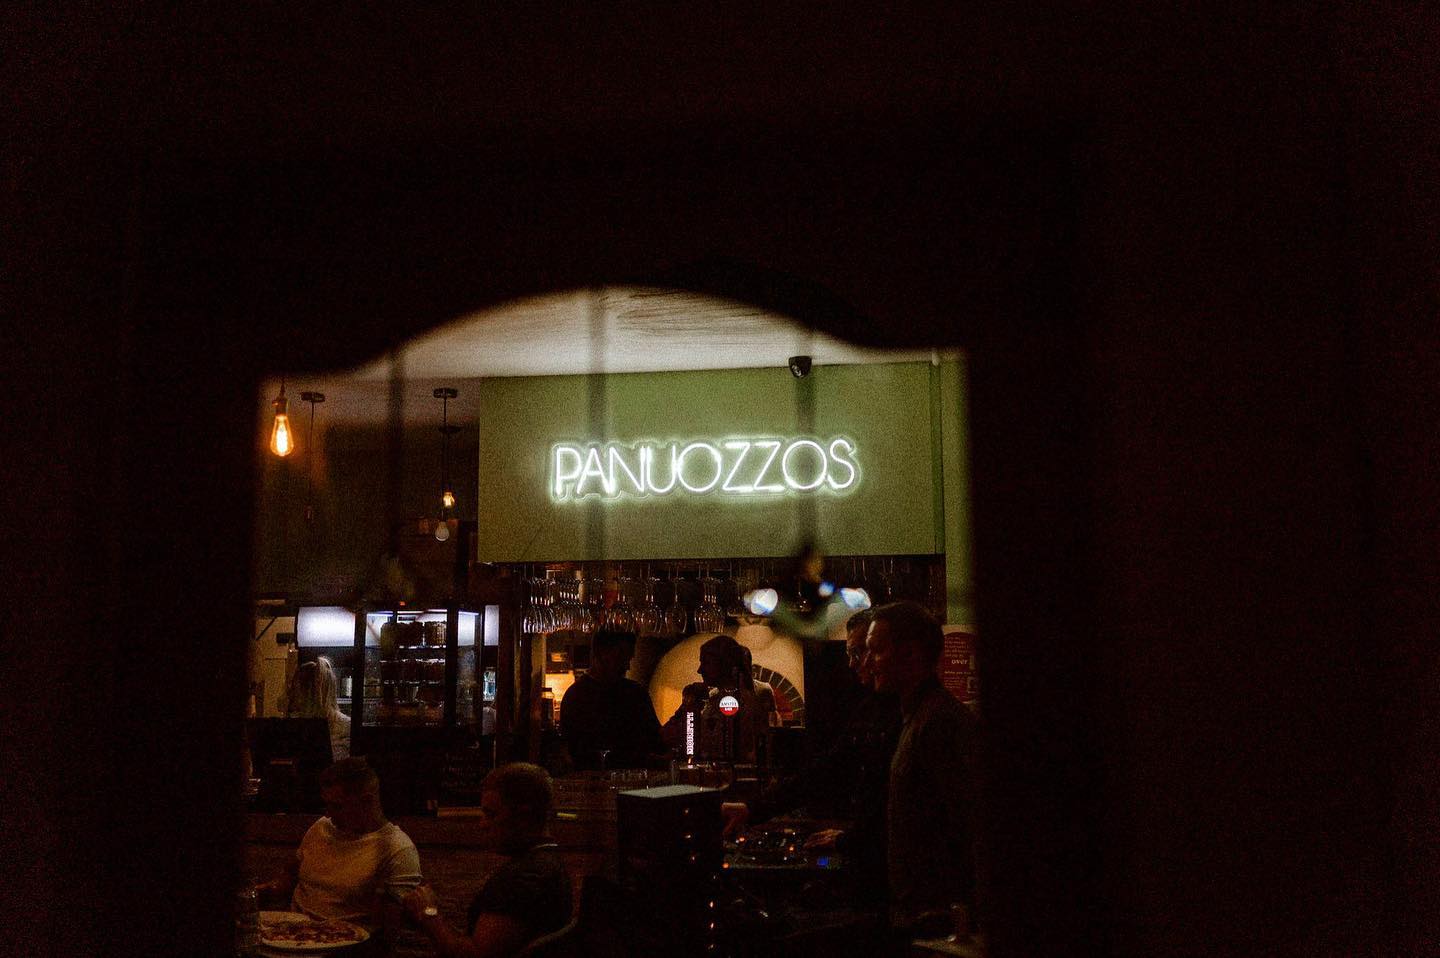 PANUOZZOS